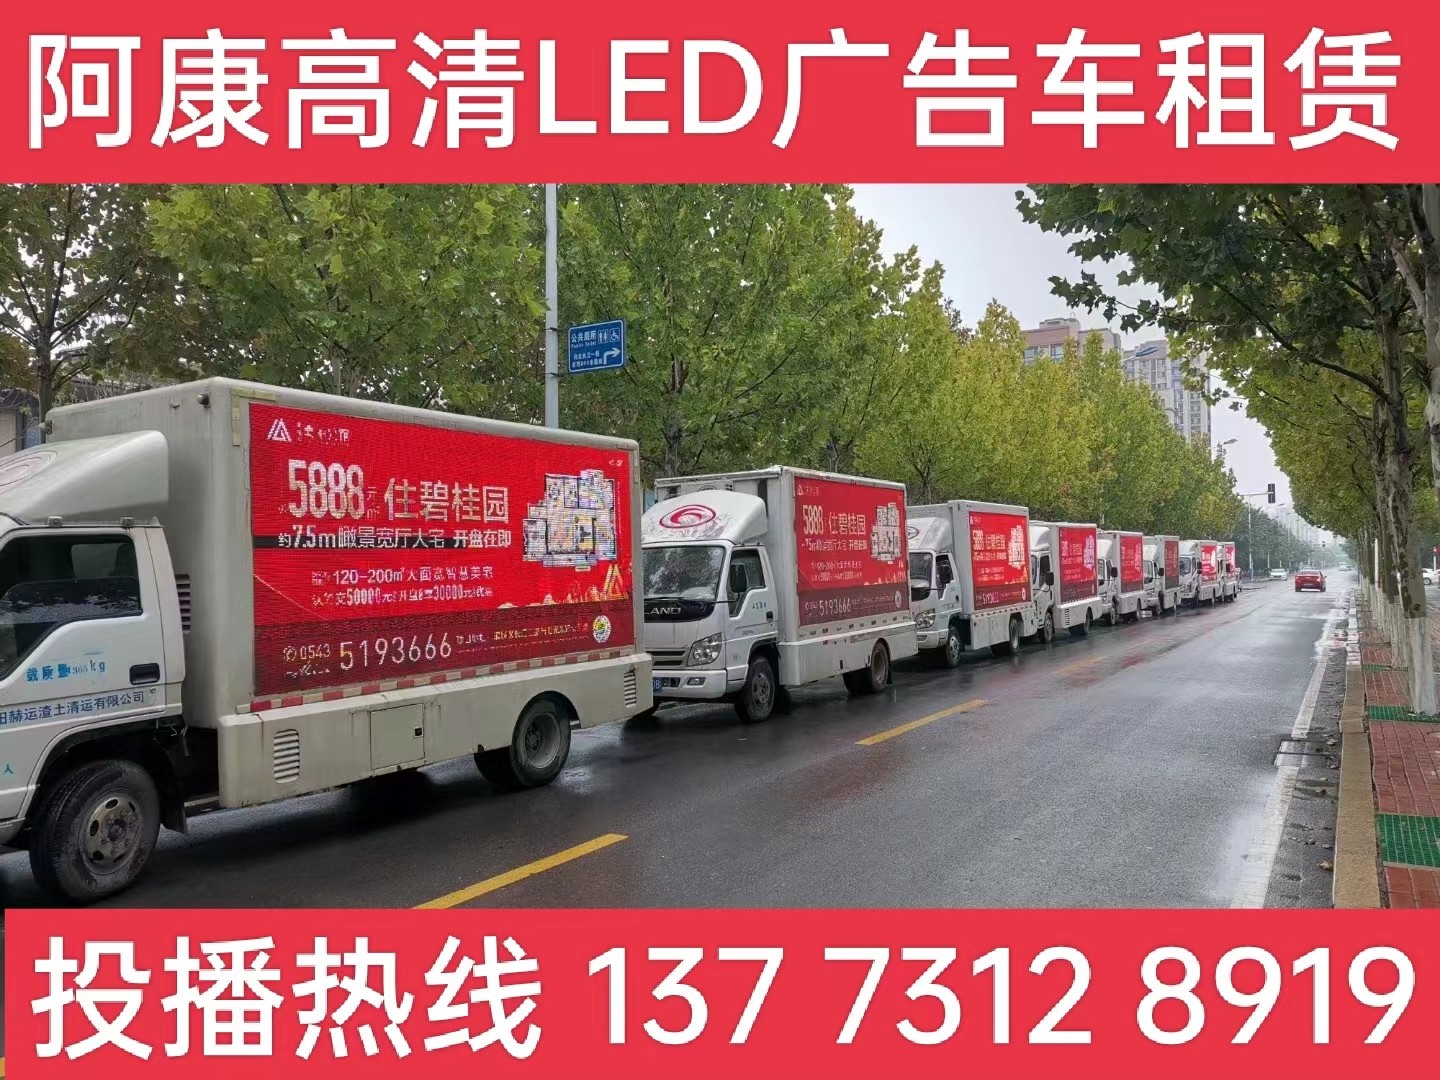 江阴宣传车租赁公司-楼盘LED广告车投放